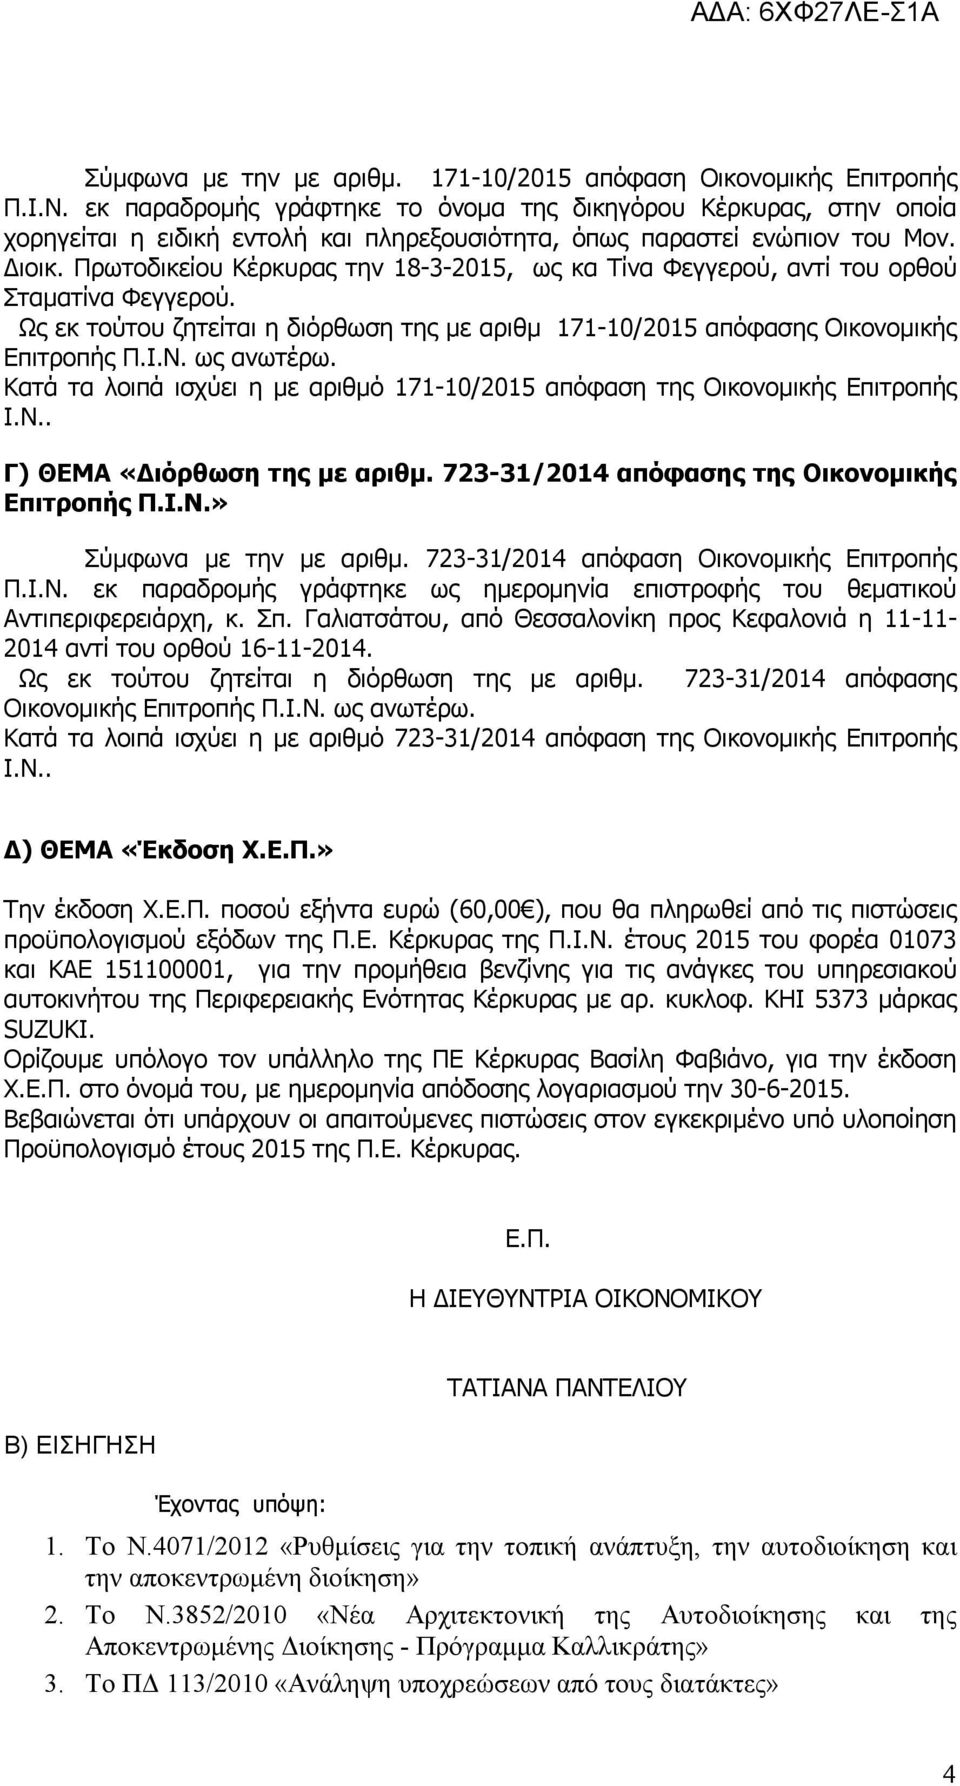 Πρωτοδικείου Κέρκυρας την 18-3-2015, ως κα Τίνα Φεγγερού, αντί του ορθού Σταματίνα Φεγγερού. Ως εκ τούτου ζητείται η διόρθωση της με αριθμ 171-10/2015 απόφασης Οικονομικής Επιτροπής Π.Ι.Ν. ως ανωτέρω.